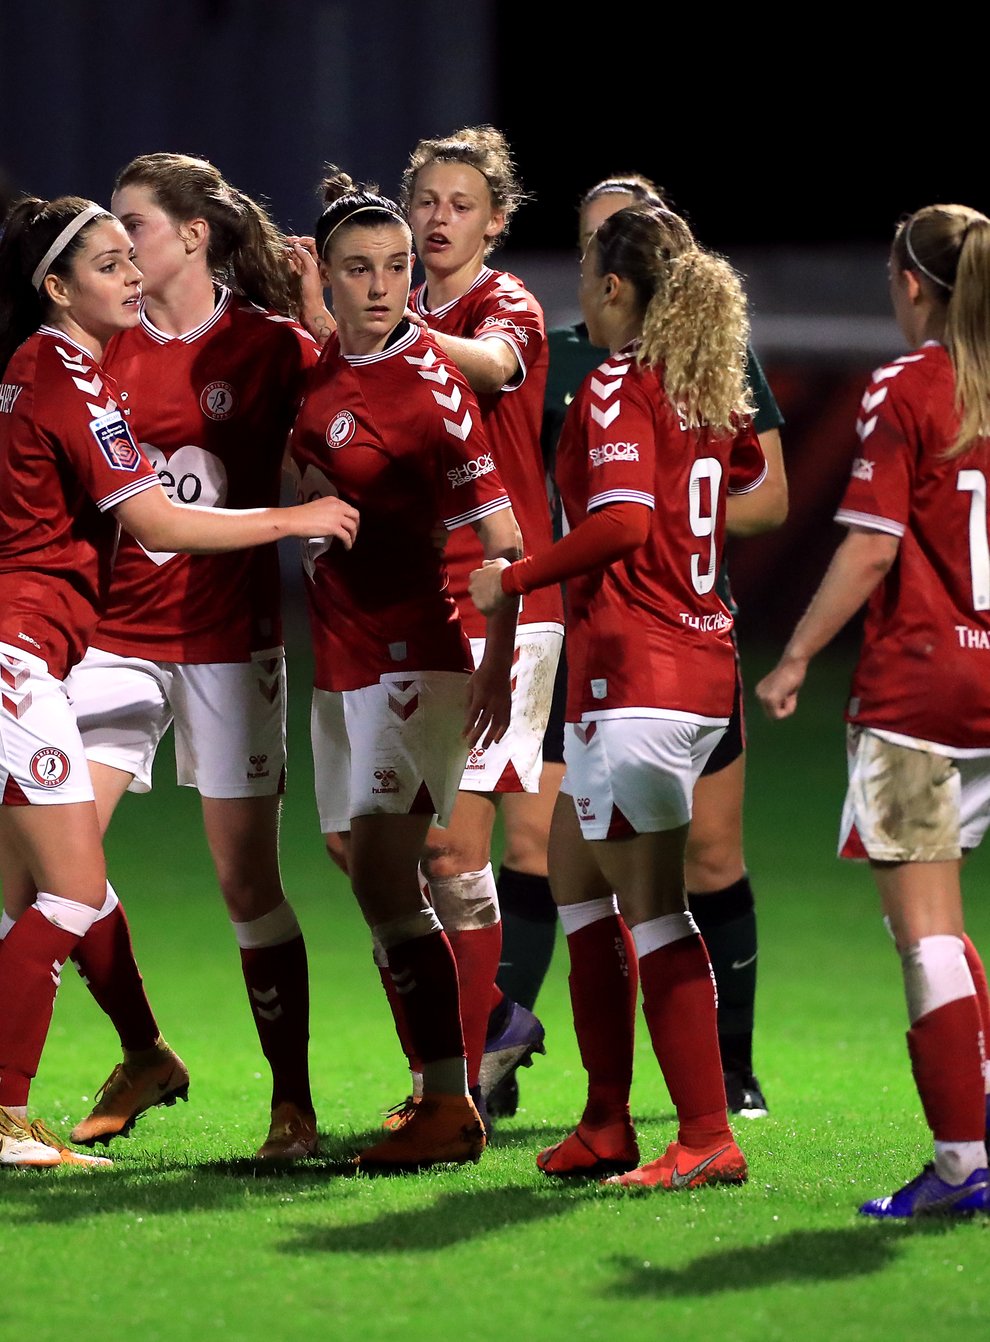 Bristol City are still winless in the Women’s Super League so far this season